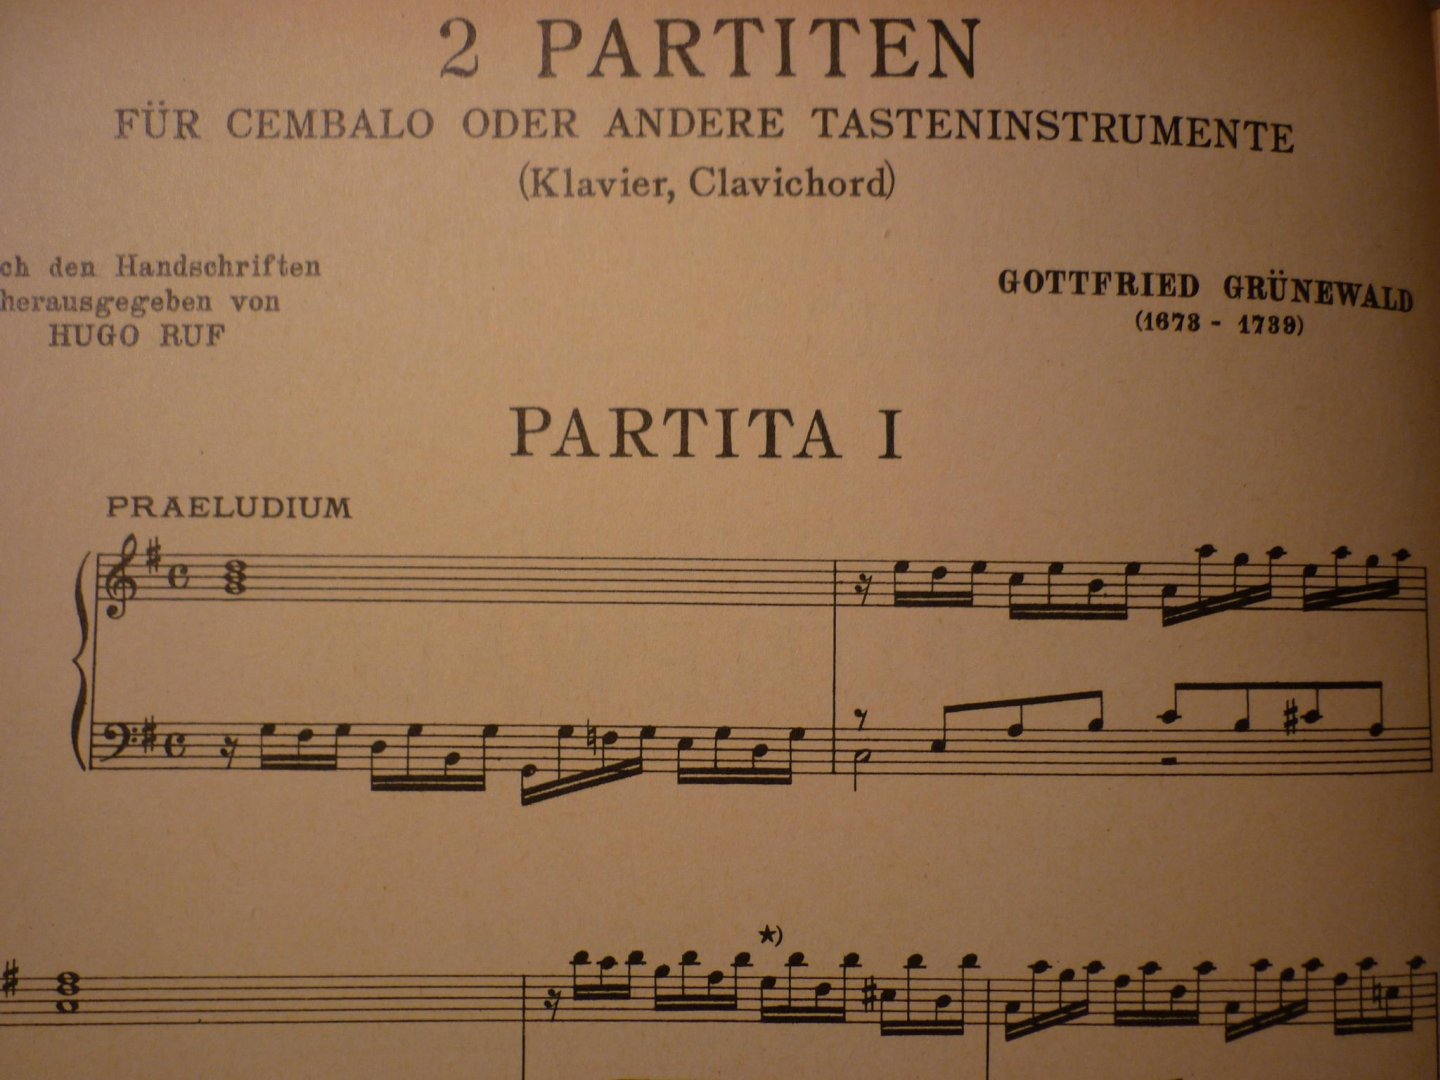 Grunewald; Gottfried (1673 - 1739) - Zwei Partiten fur Cembalo oder Tasteninstrumente (Klavier, Clavichord); nach den Handschriften herausgegeben von Hugo Ruf